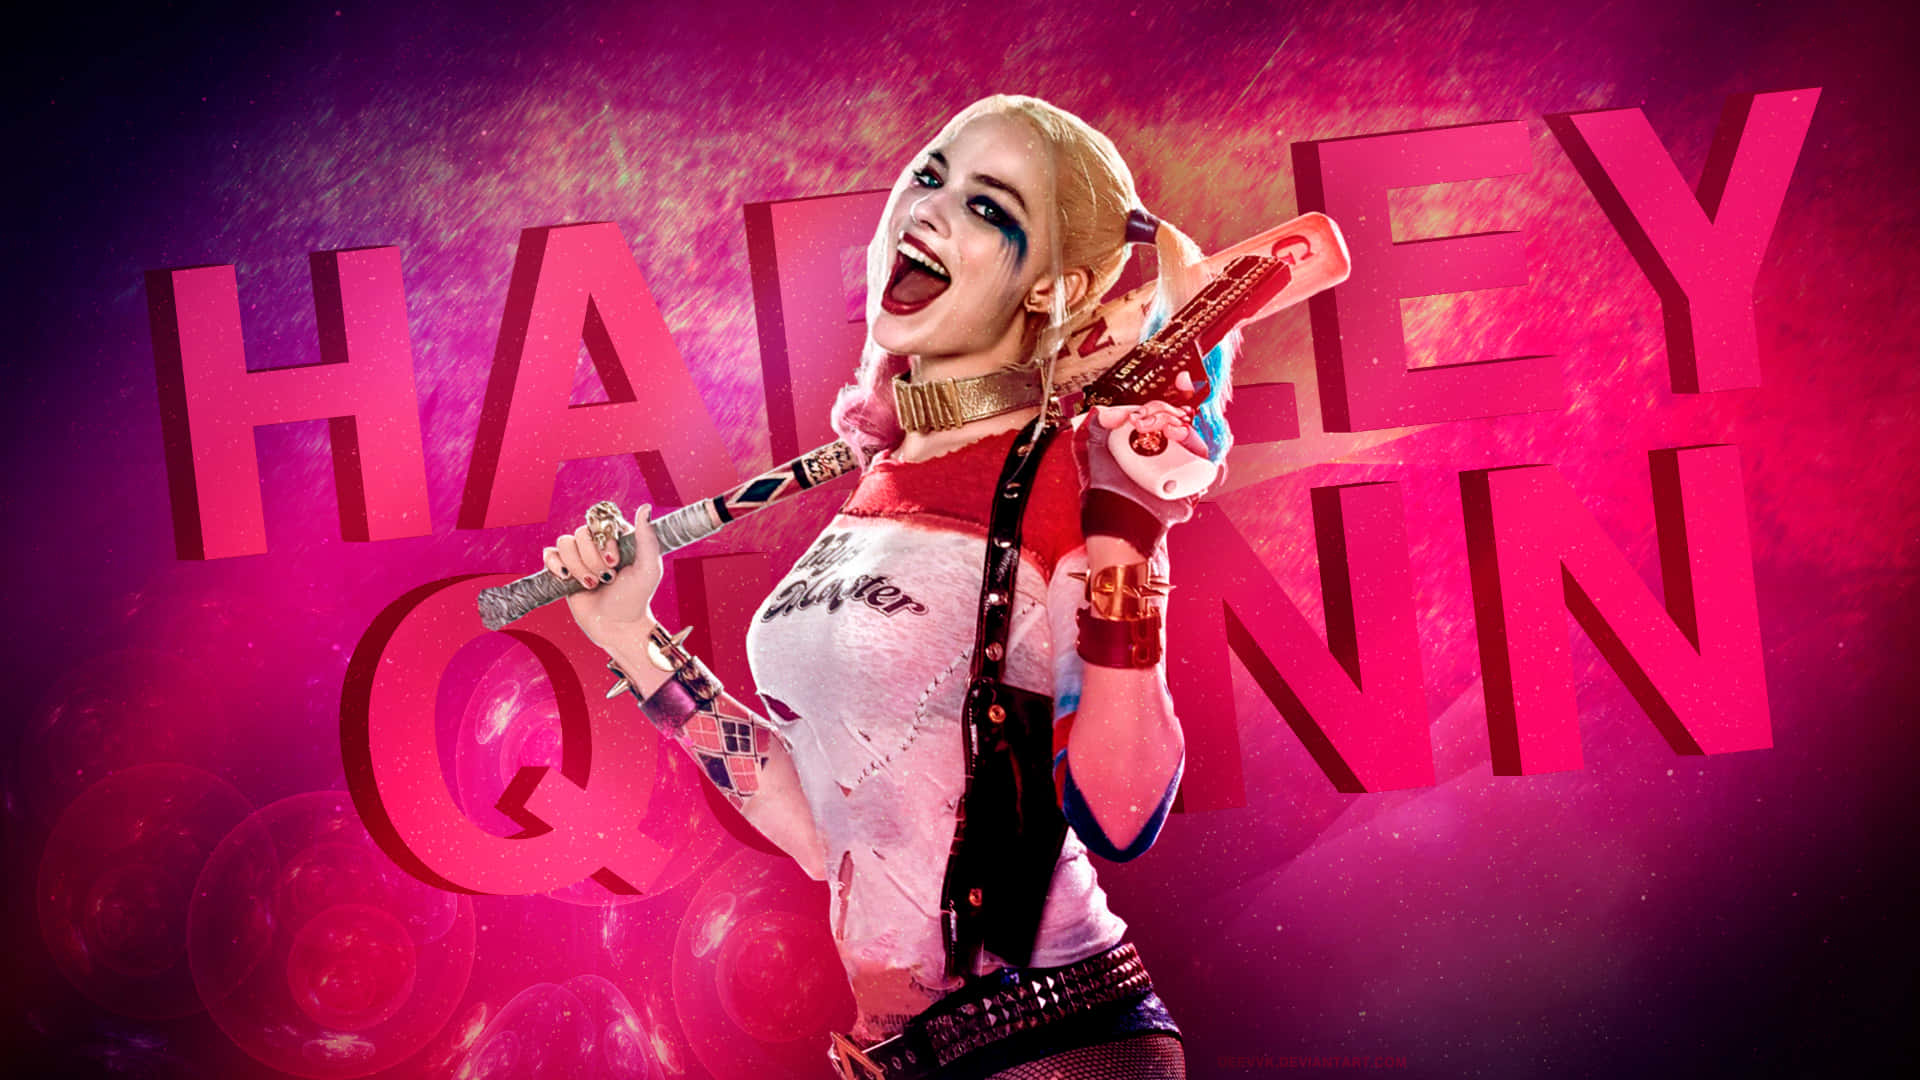 Margot Robbie rocker den maniske energi fra Harley Quinn. Wallpaper